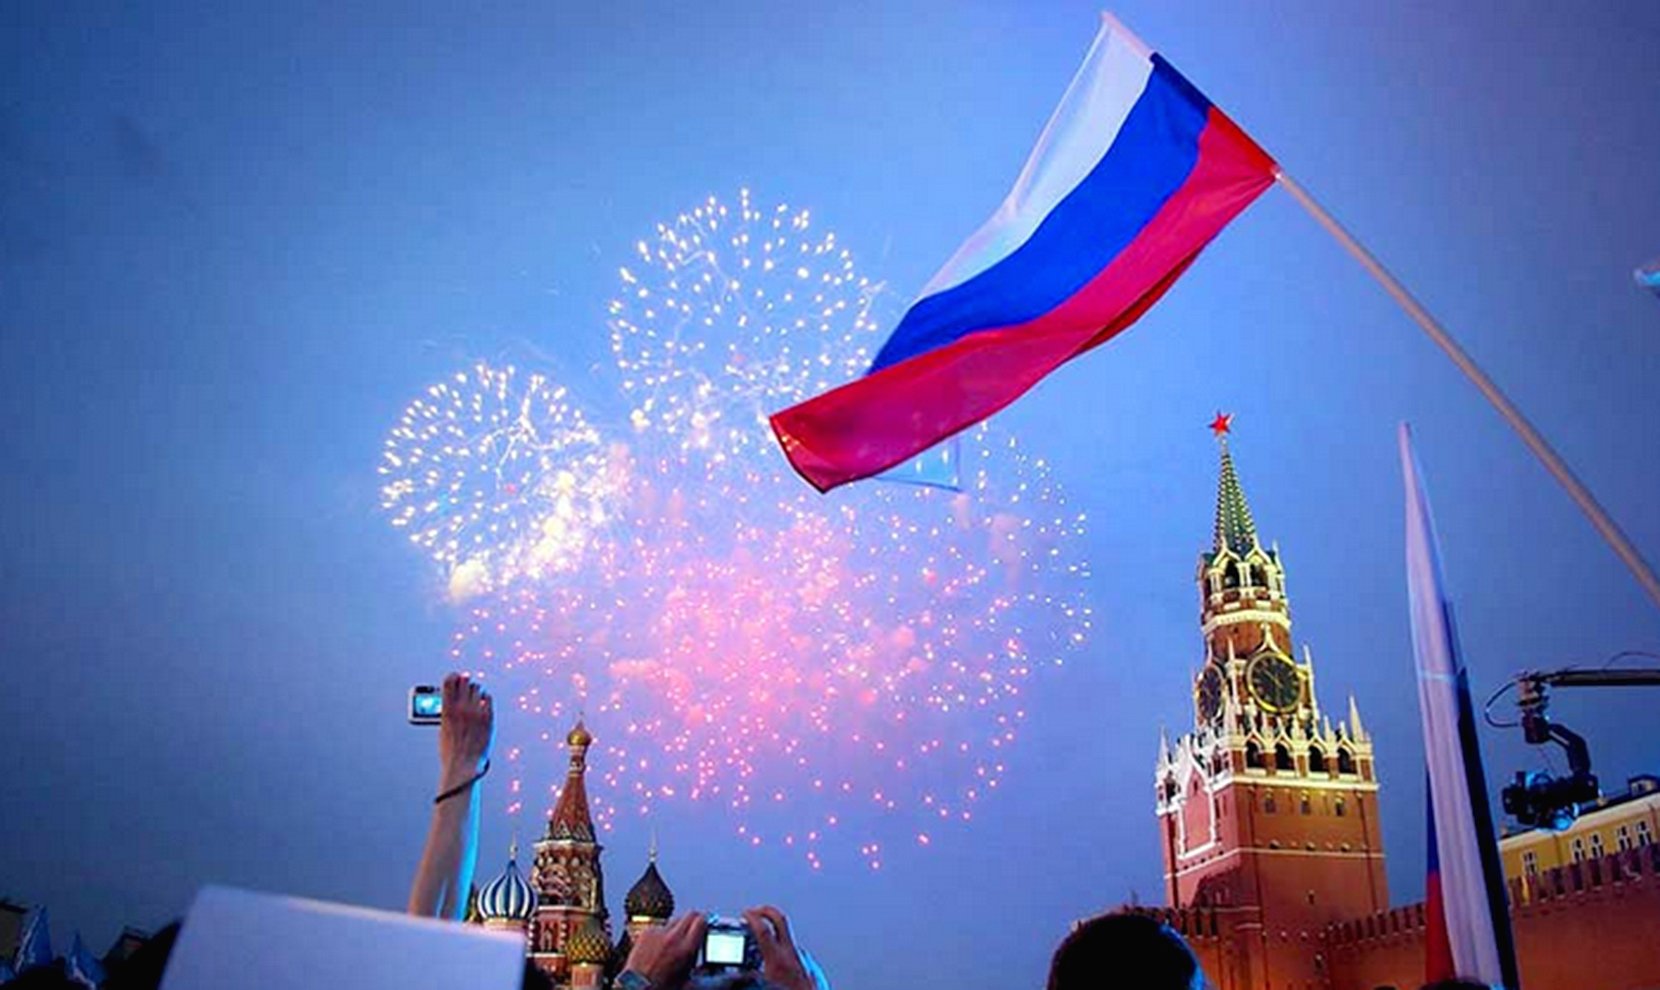 День города москва кремль